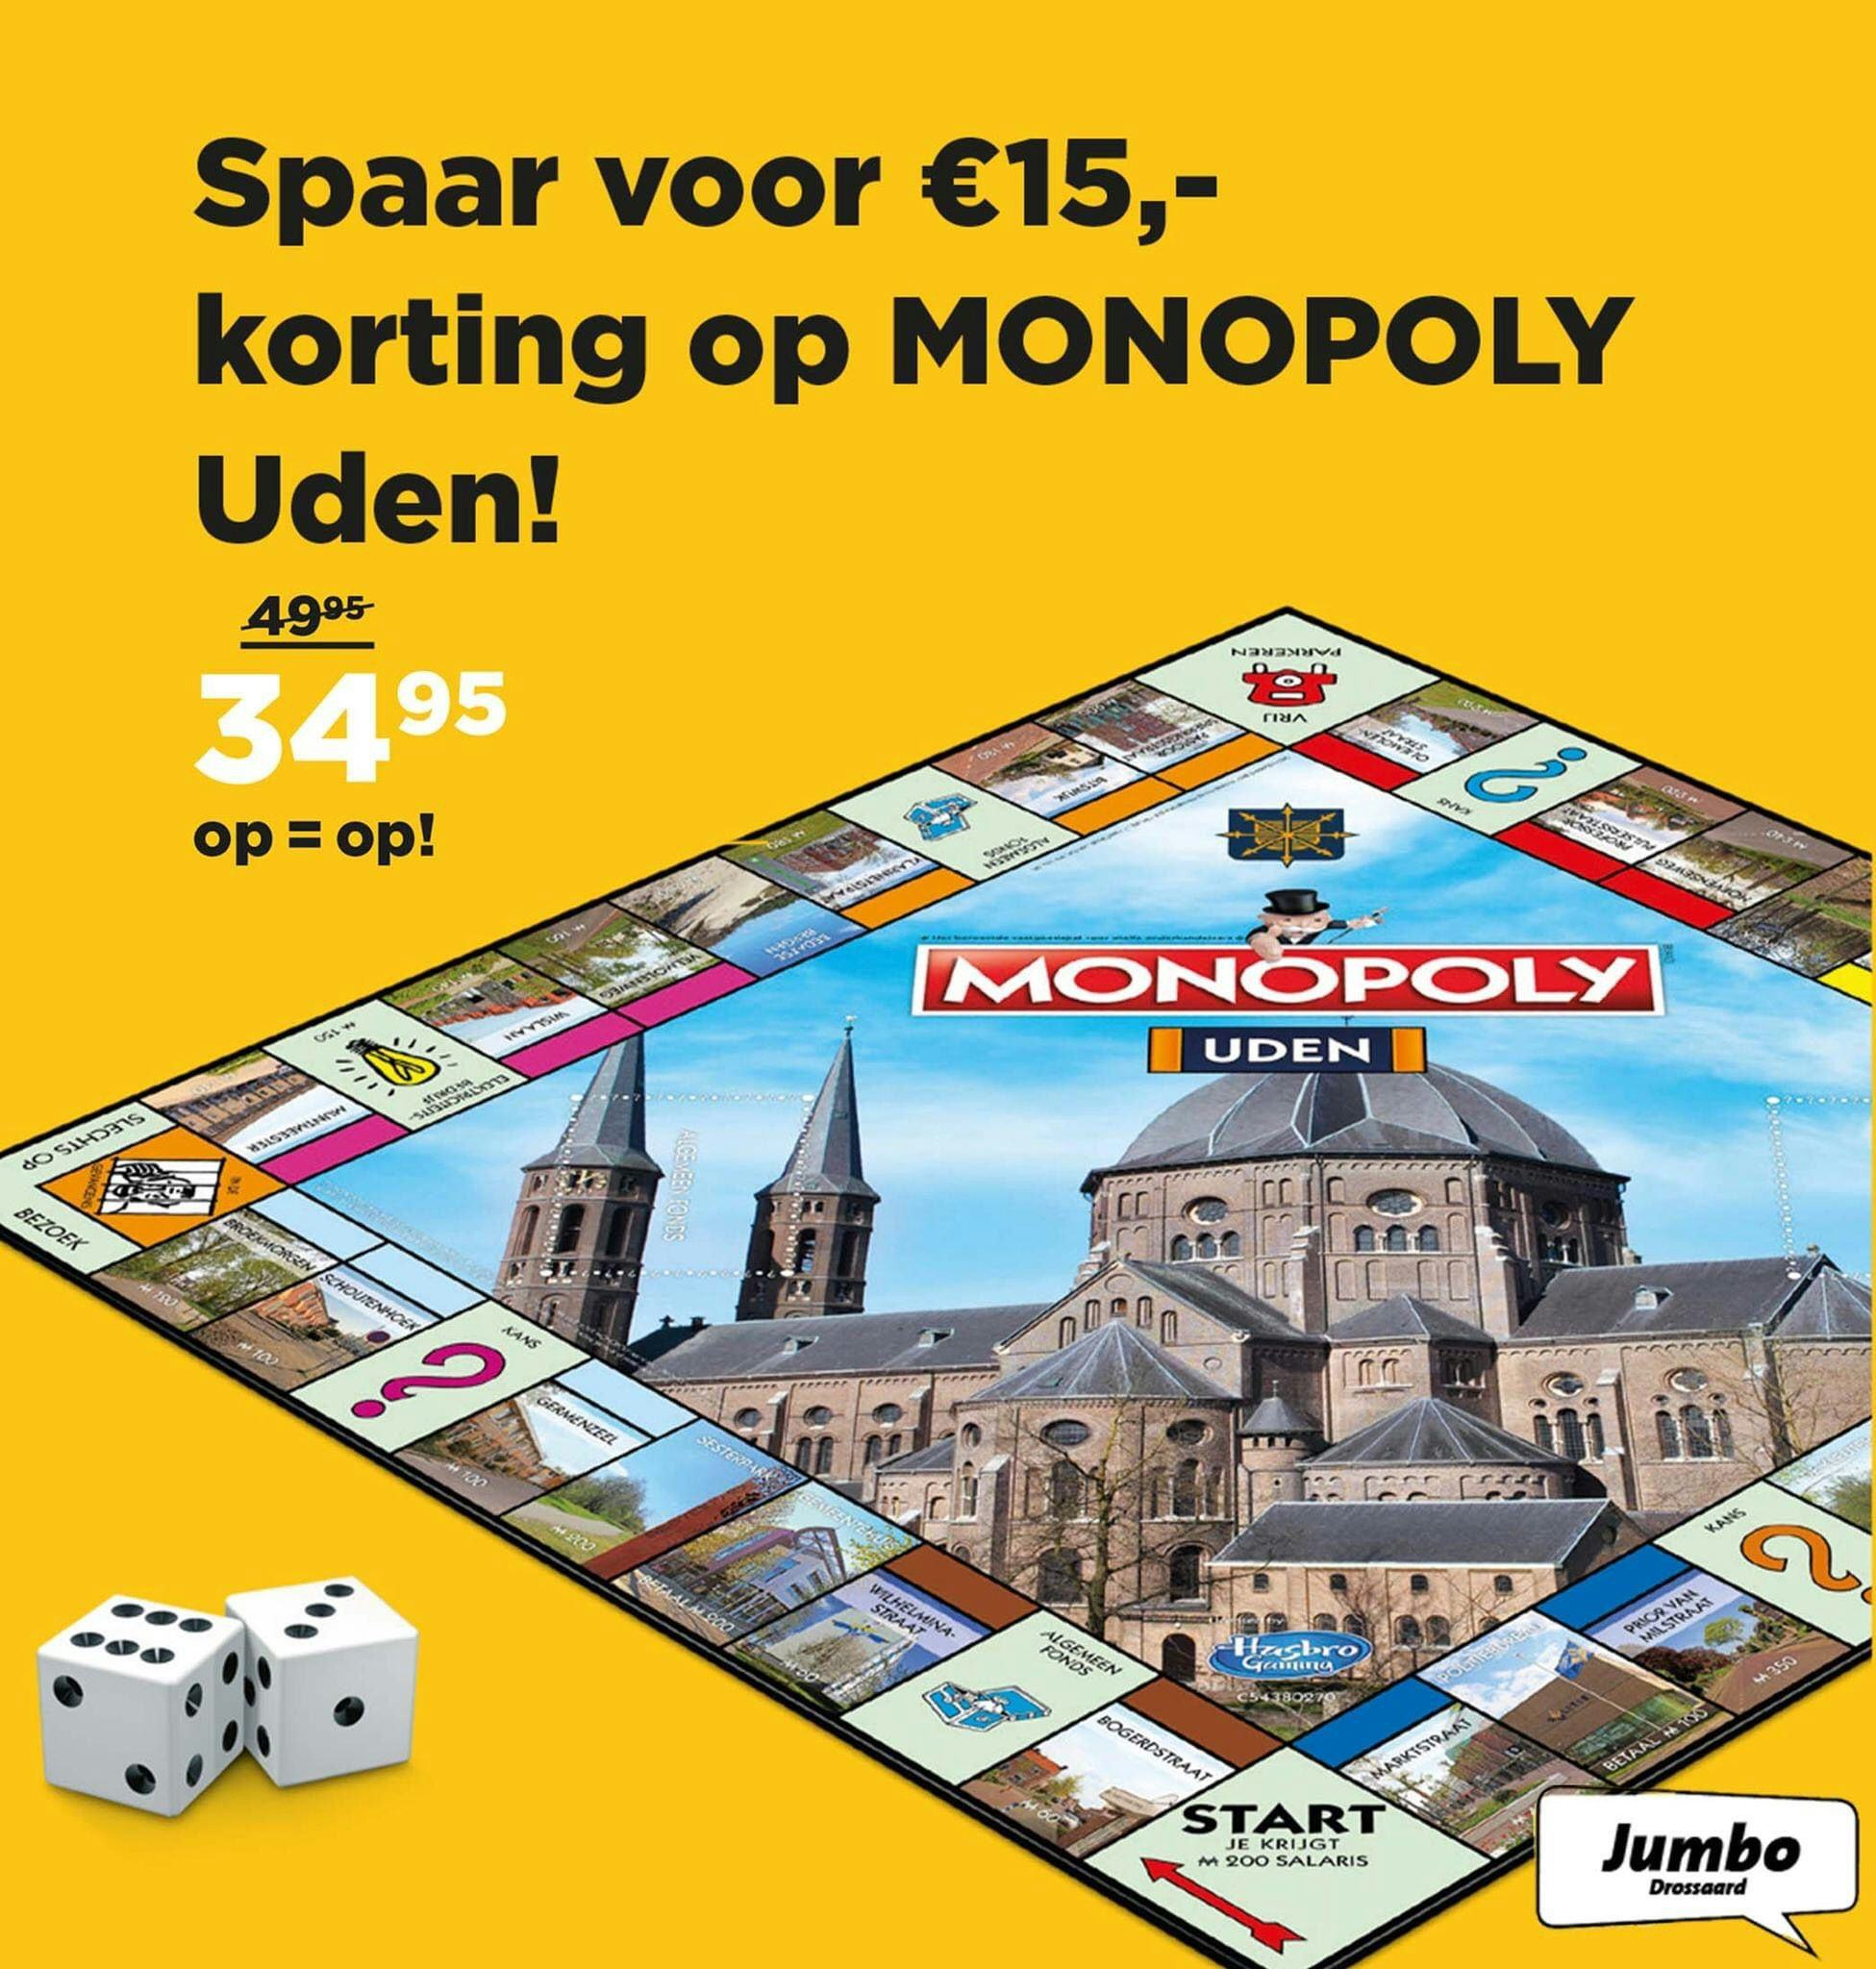 Een advertentie van Jumbo Uden. die een lokaal Monopoly-spel lanceerde. Foto: Jumbo 